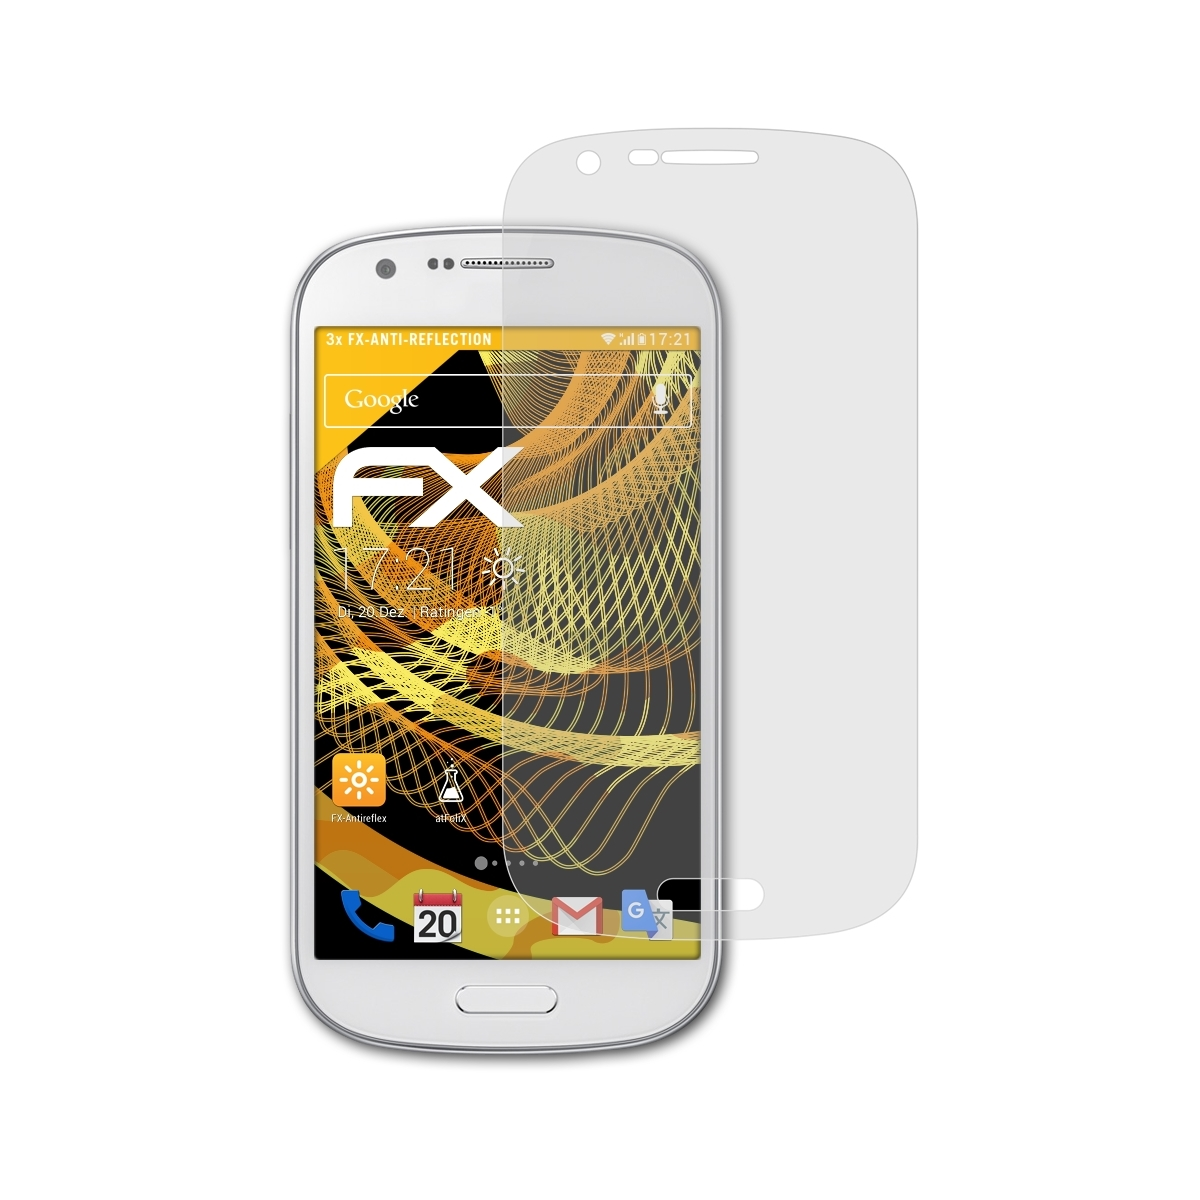 FX-Antireflex Galaxy (GT-i8730)) Express Samsung 3x Displayschutz(für ATFOLIX